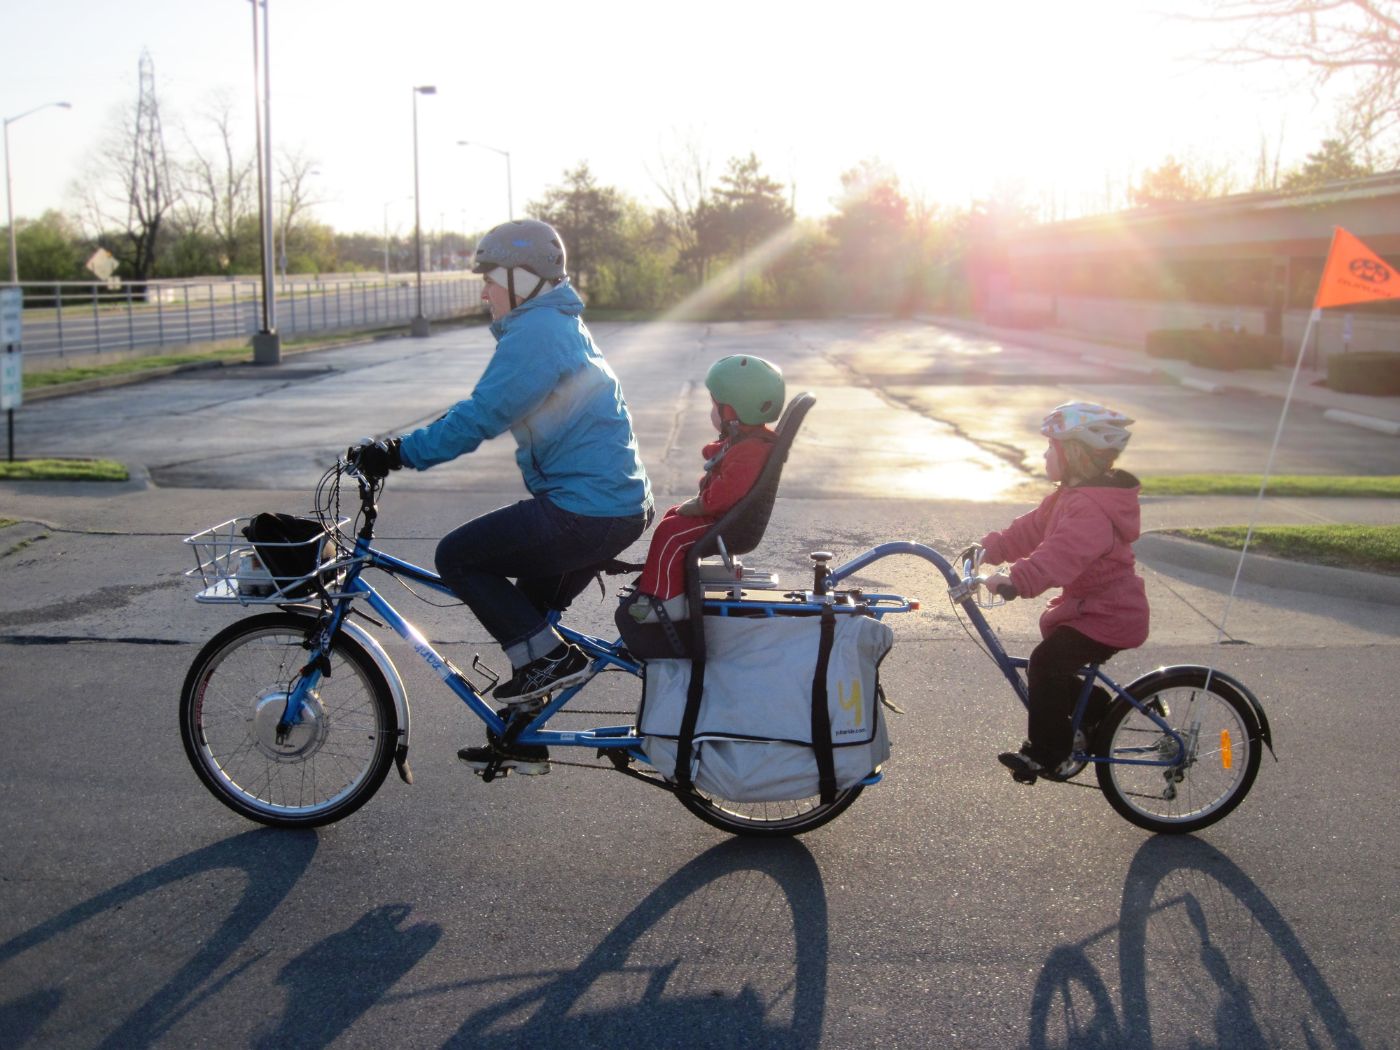 Siège vélo enfant à partir de 9 mois pour tranporter votre enfant en  sécurité